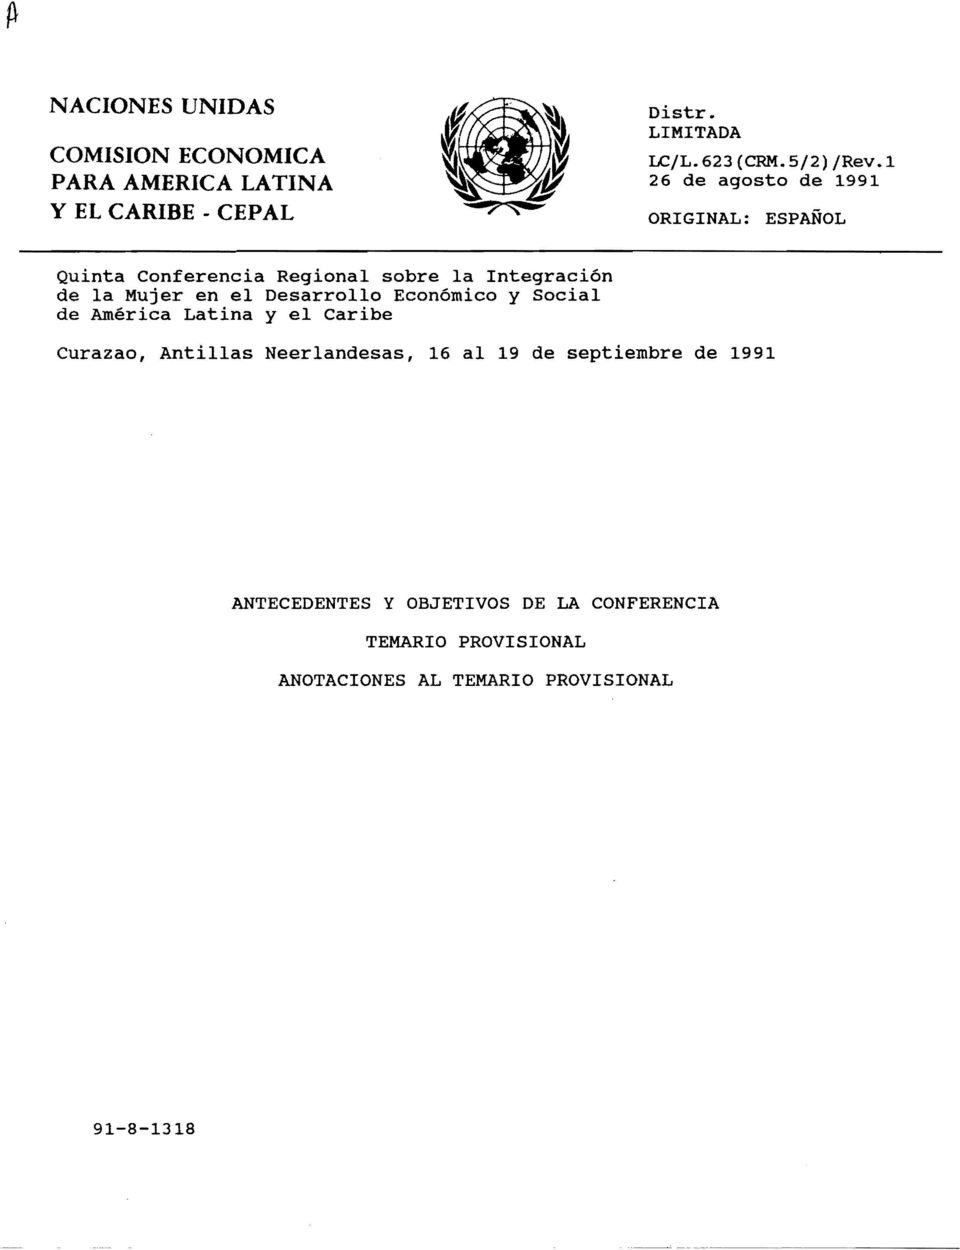 1 26 de agosto de 1991 ORIGINAL: ESPANOL Quinta Conferencia Regional sobre la Integracion de la Mujer en el Desarrollo